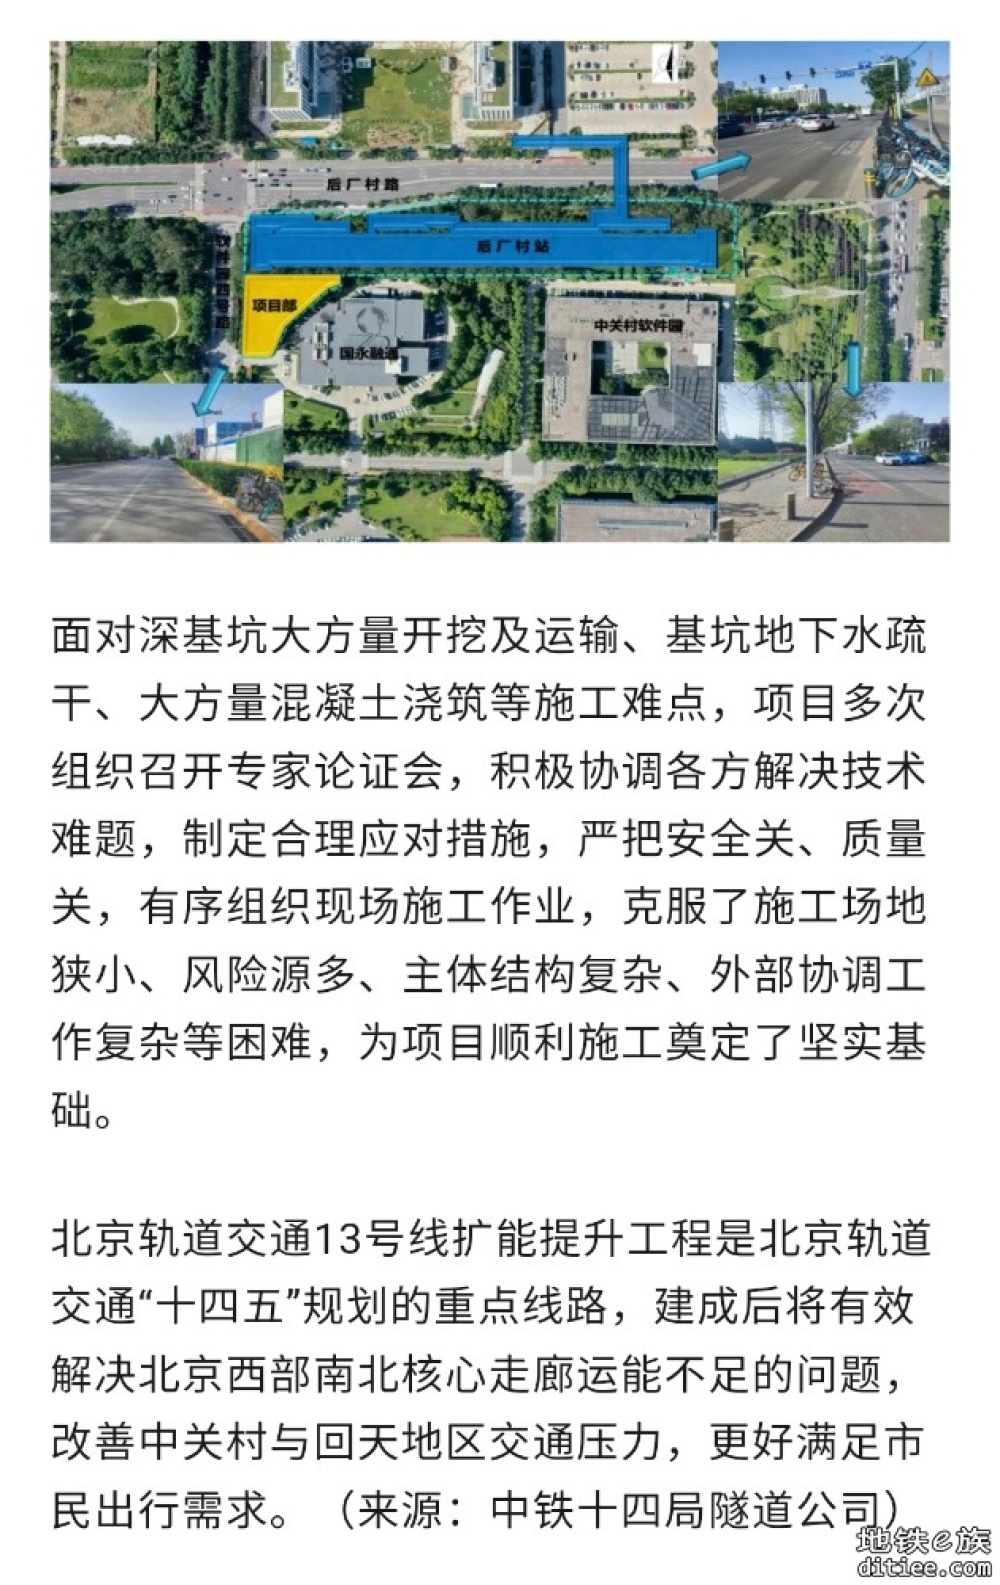 北京地铁13号线后厂村站主体结构封顶